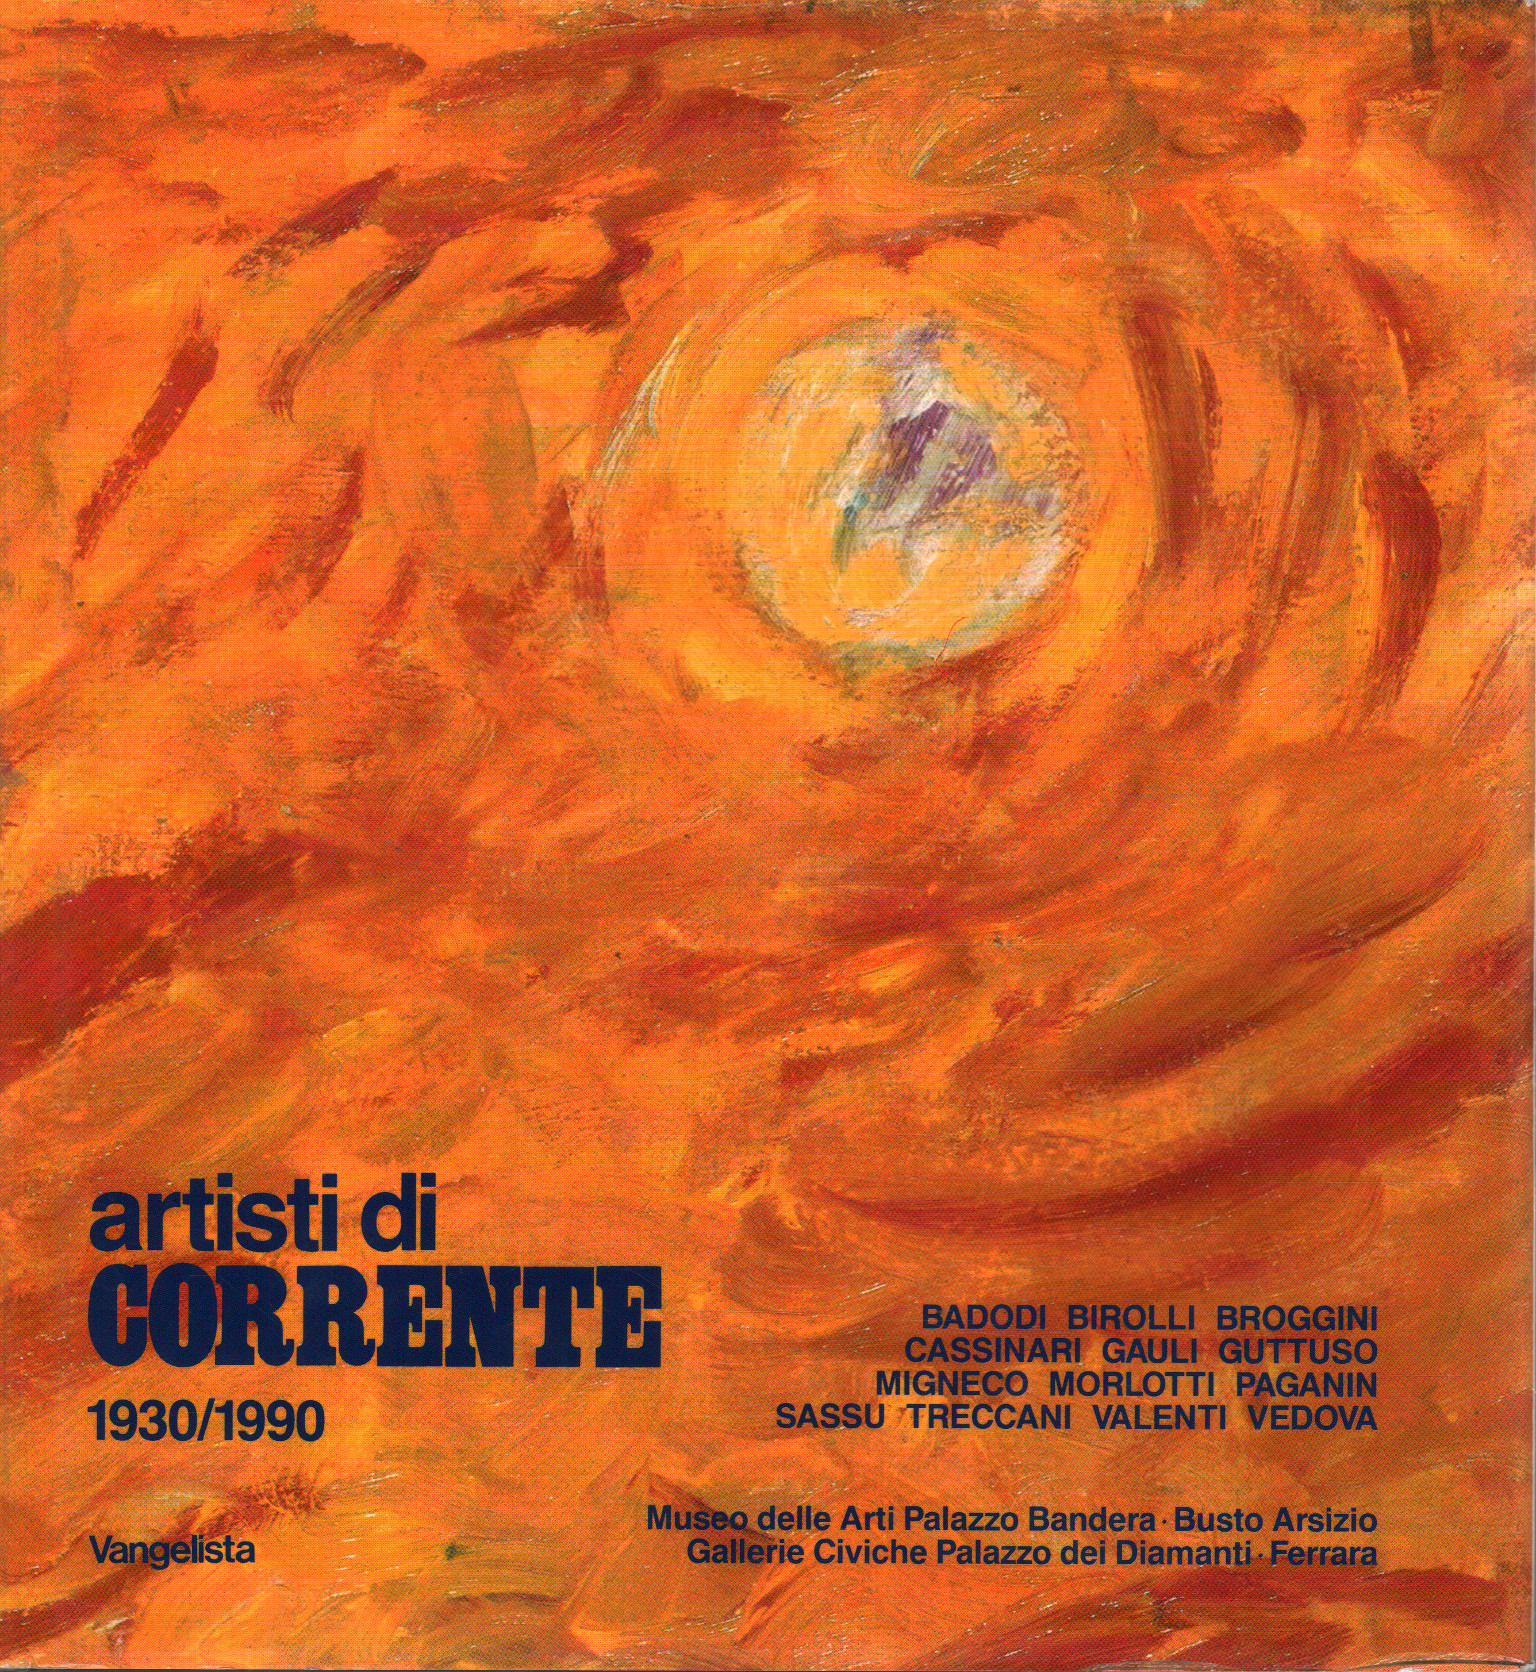 Artistes actuels 1930/1990